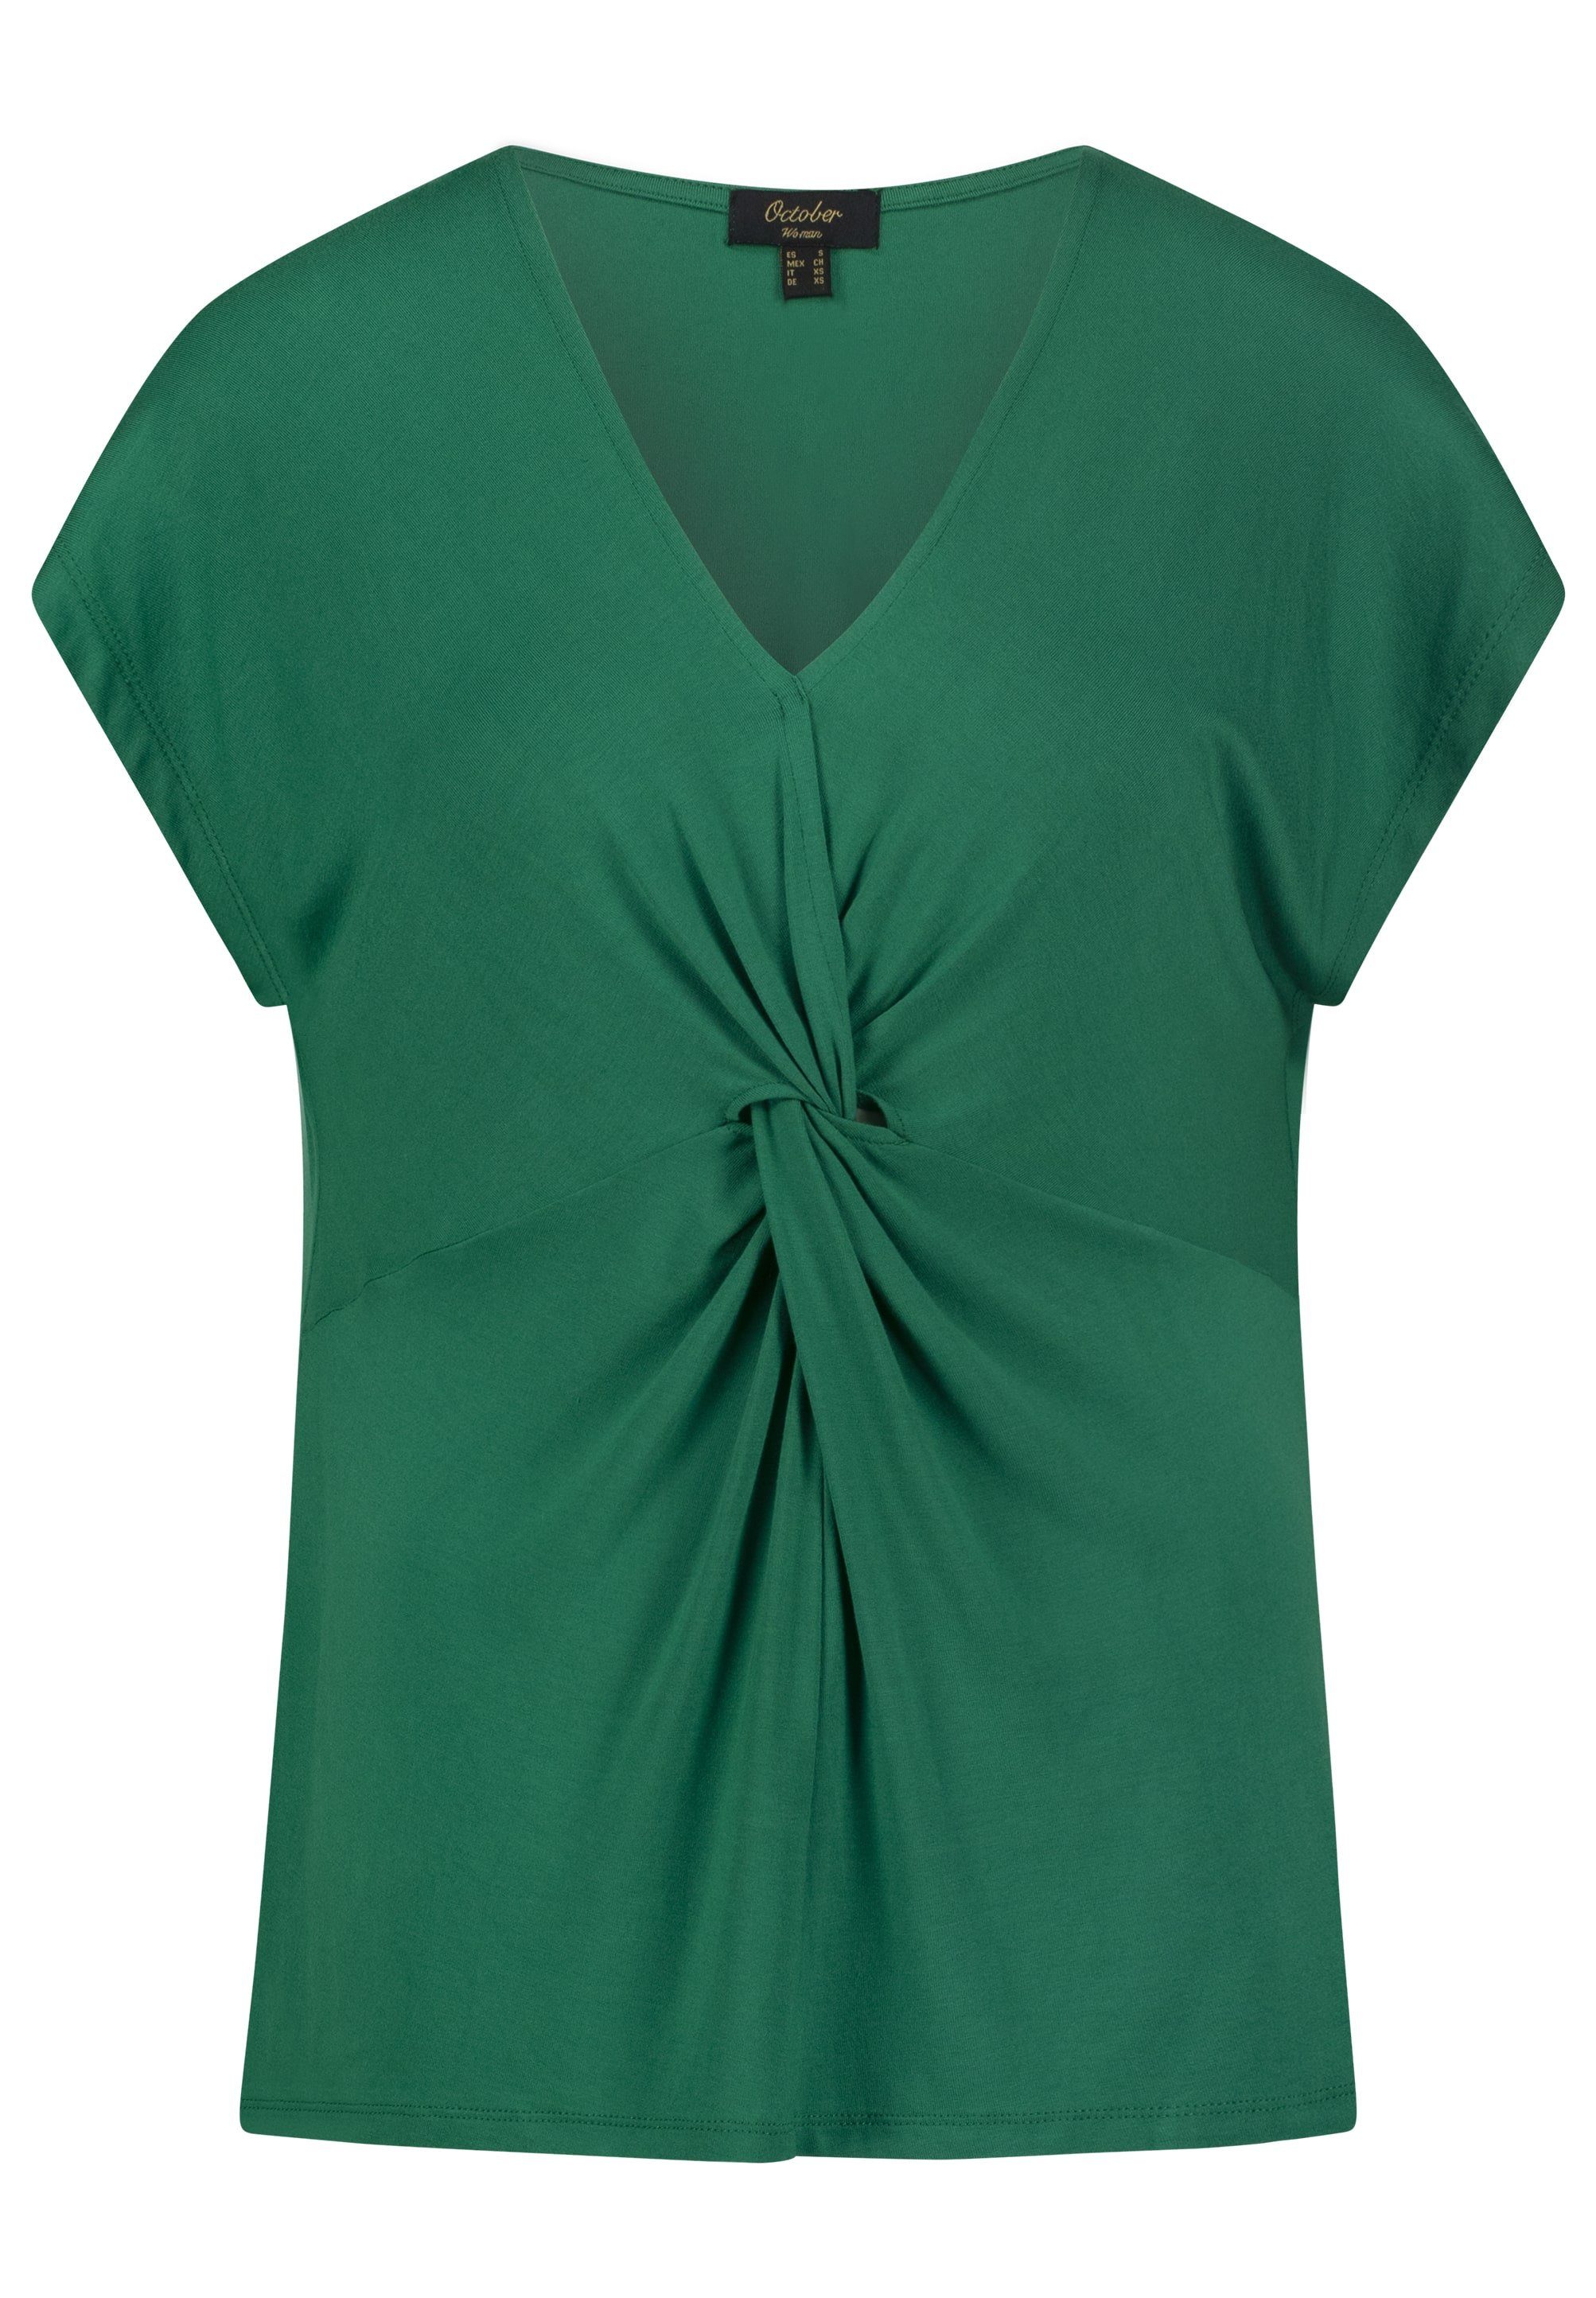 October T-Shirt im tollen Knoten-Design grün